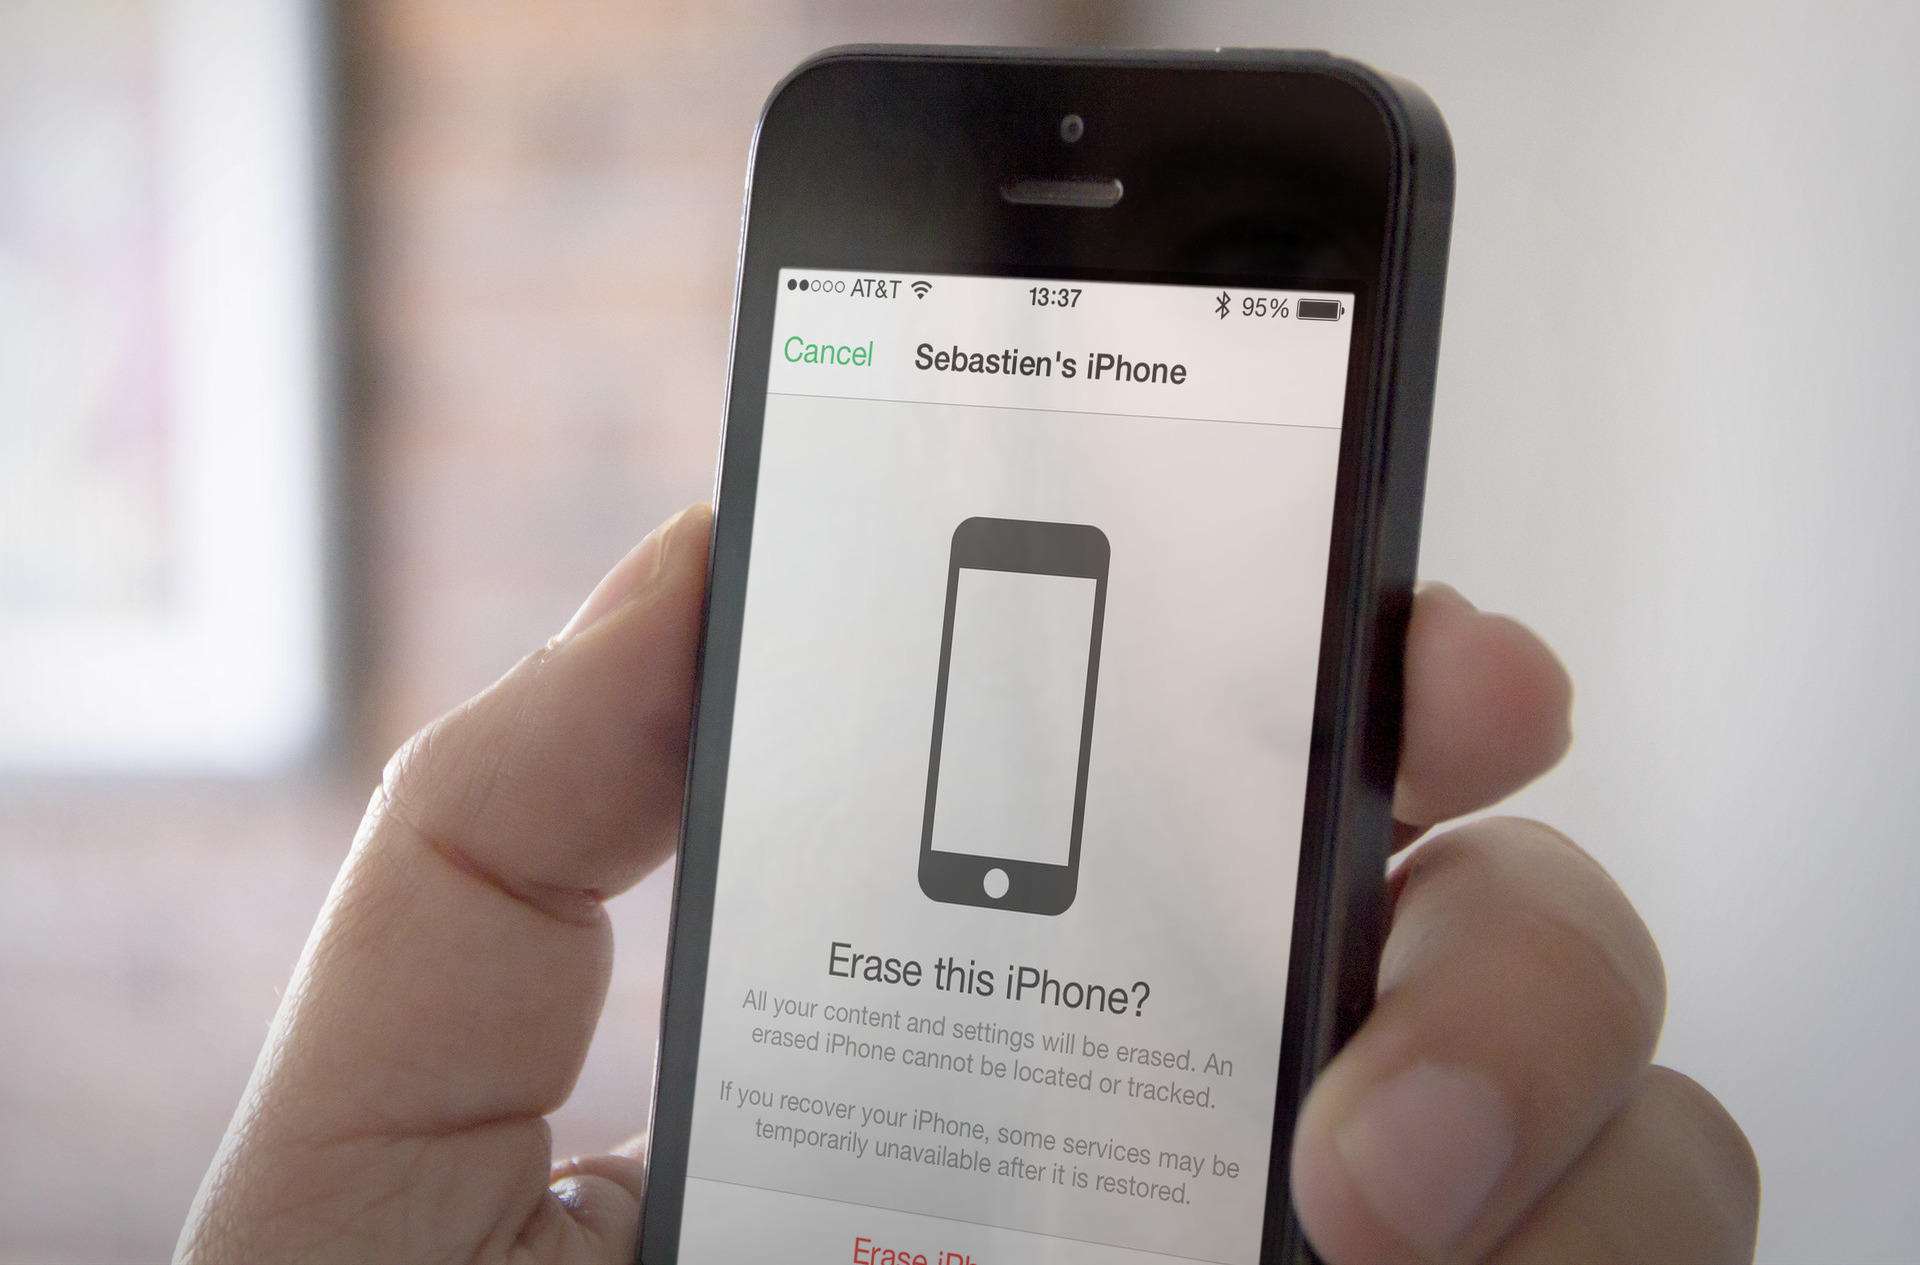 erase-this-iPhone سرقة جهاز الآي-فون